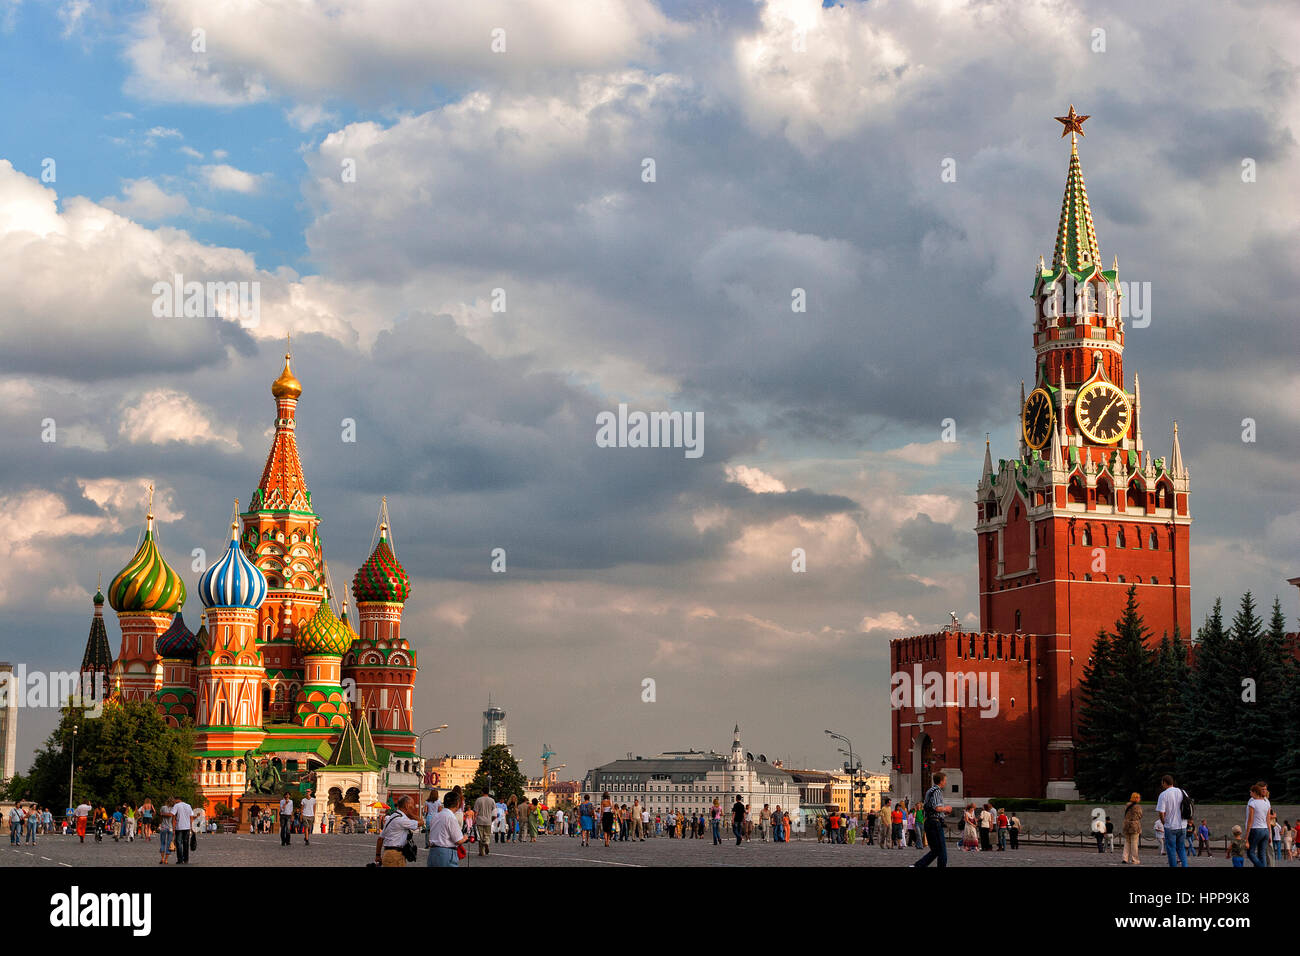 La Russie, Moscou, la Place Rouge, la cathédrale de Saint Basil et Spasskaya Bashnya Banque D'Images